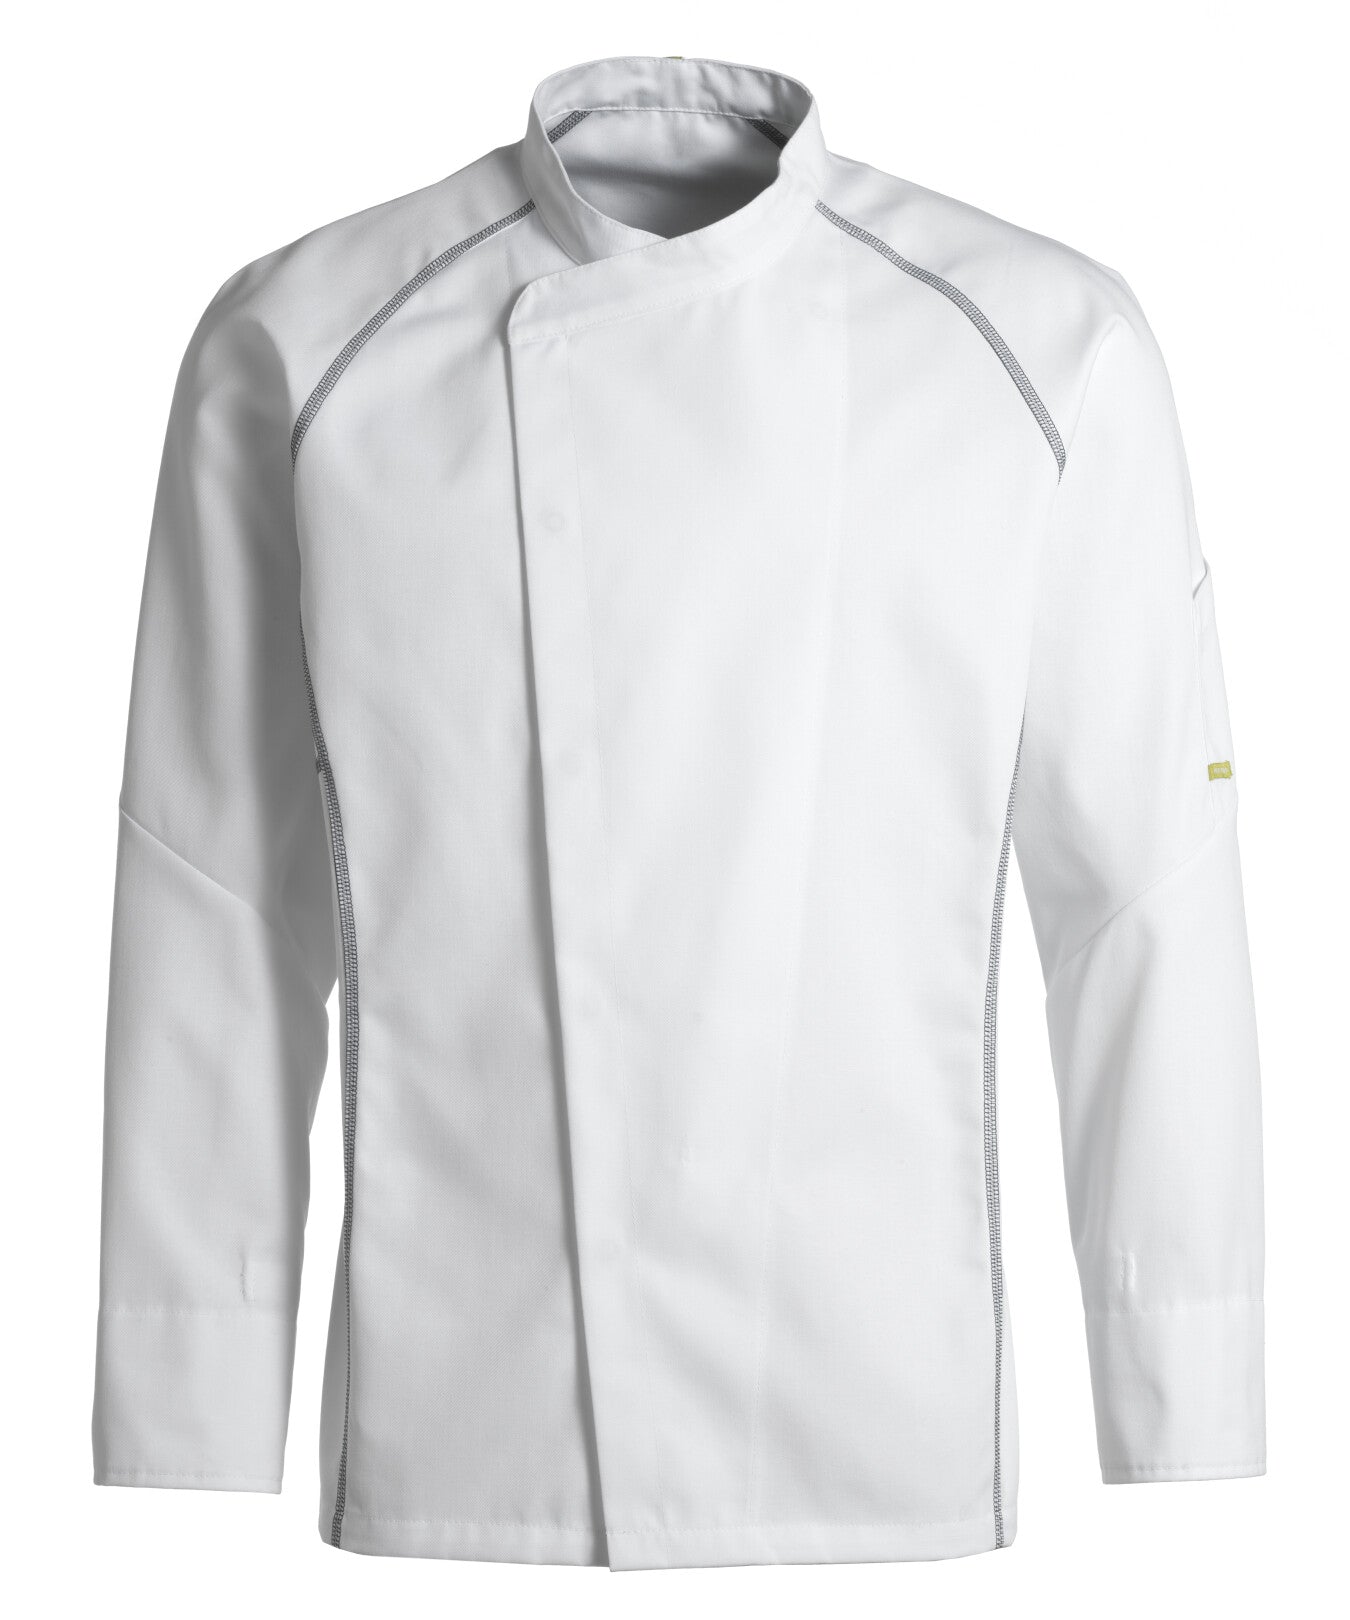 Unisex Chef Jacket 23401